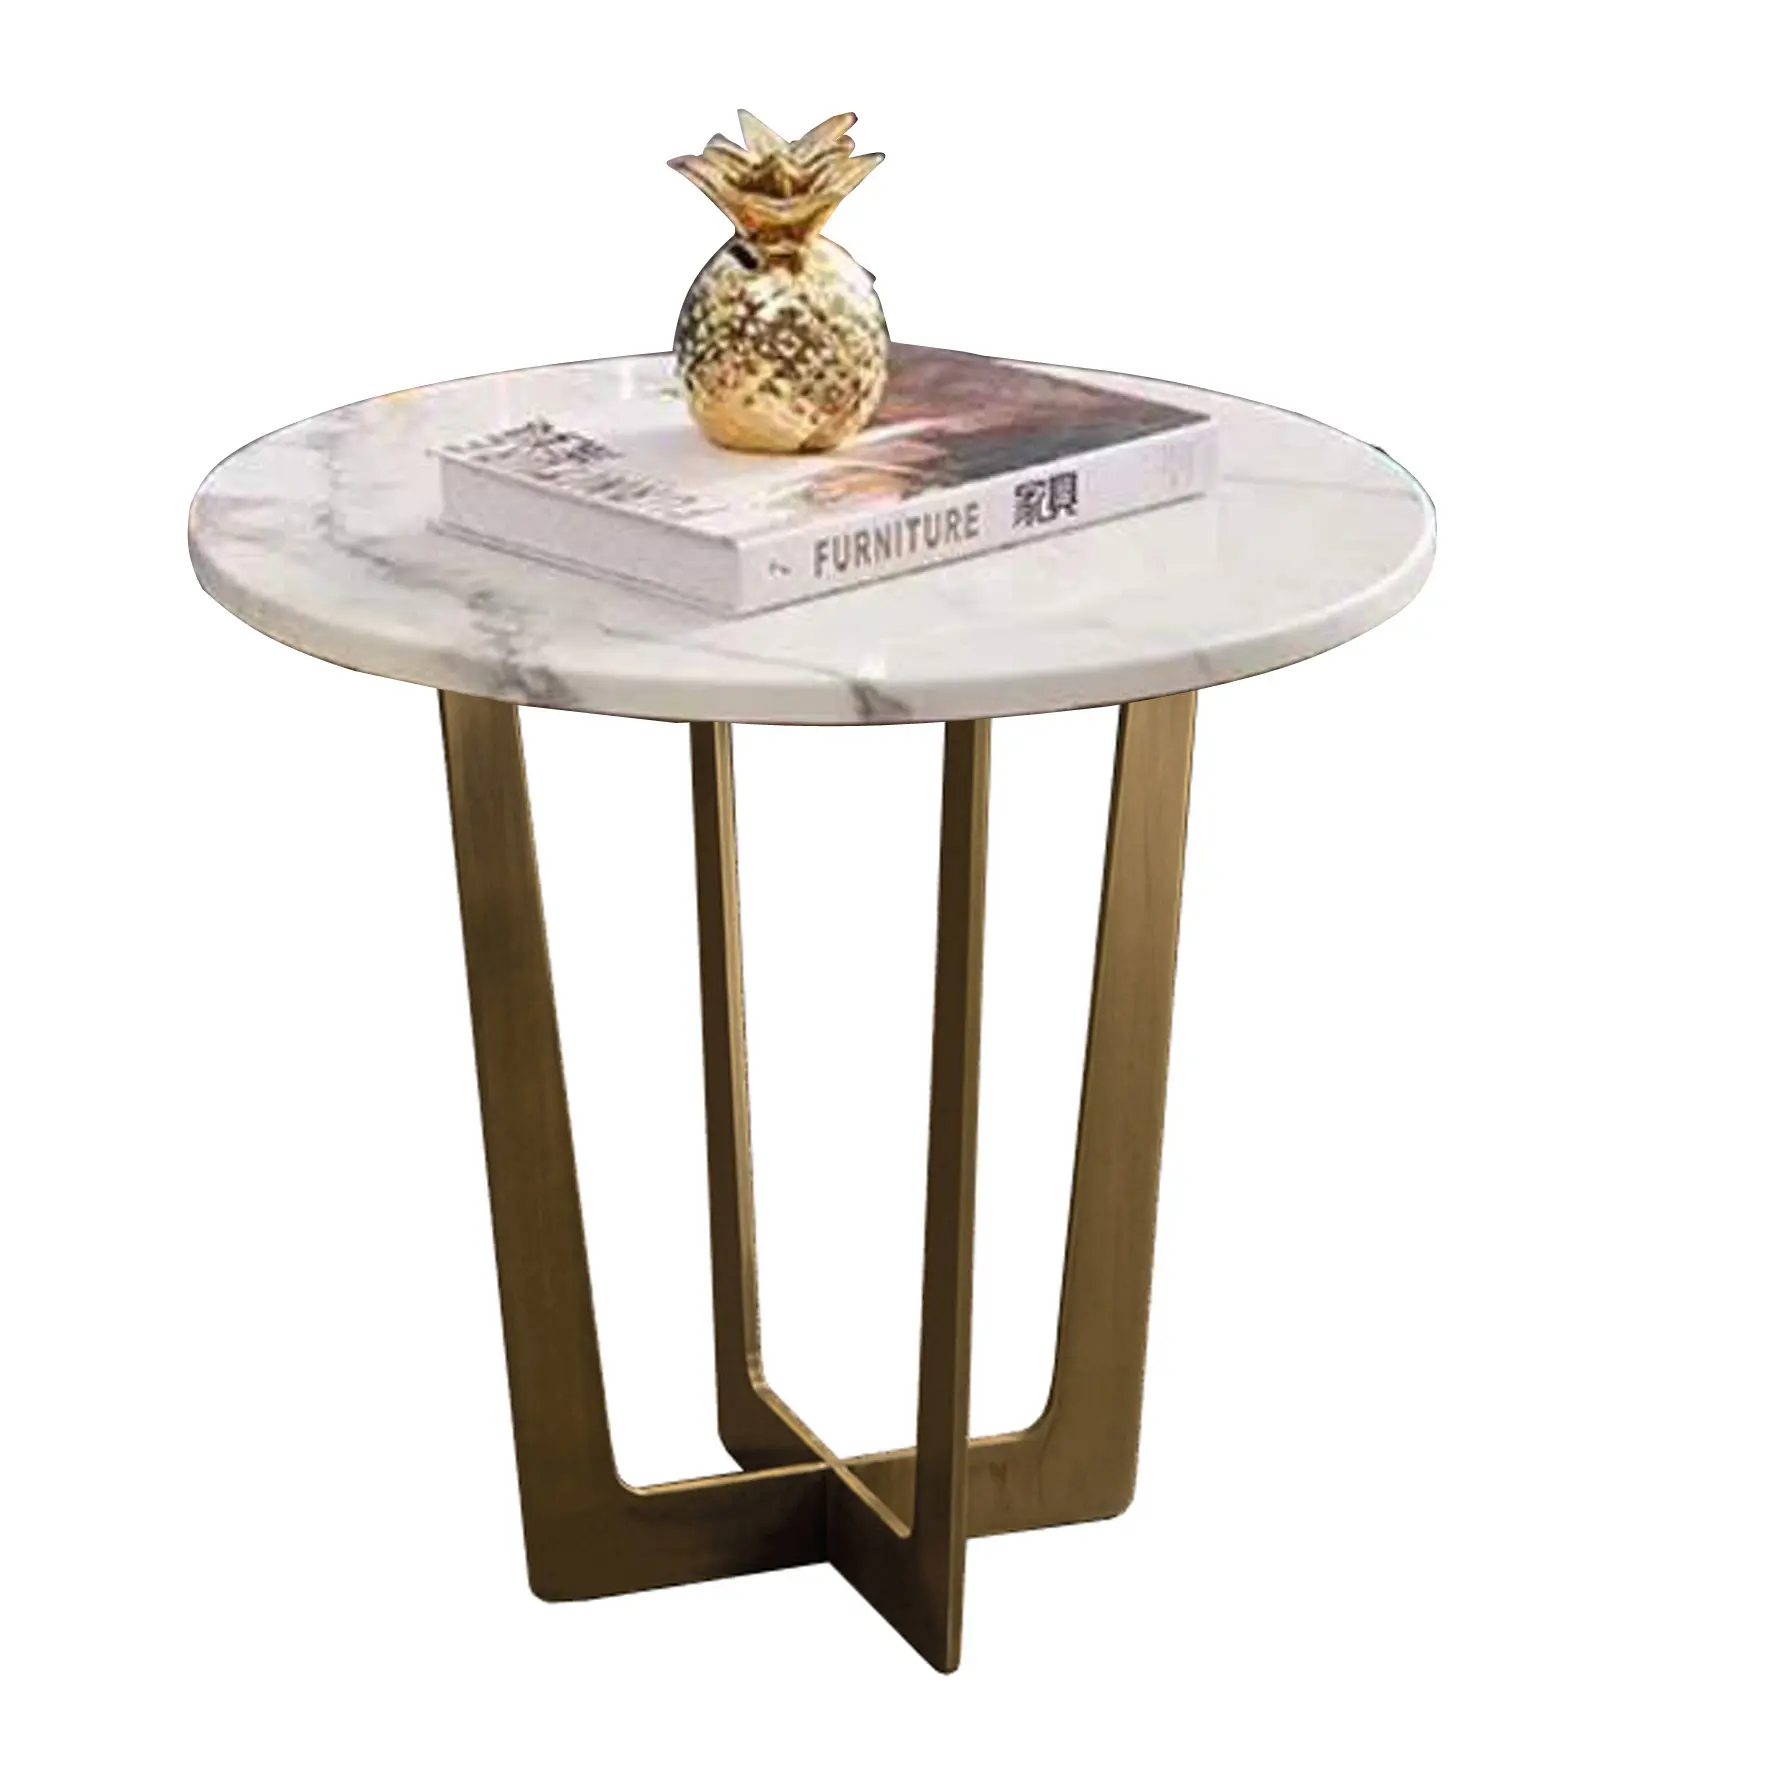 Salon Design italien à usage domestique, acier inoxydable, rond spécial, petit métal, Table basse en marbre noir